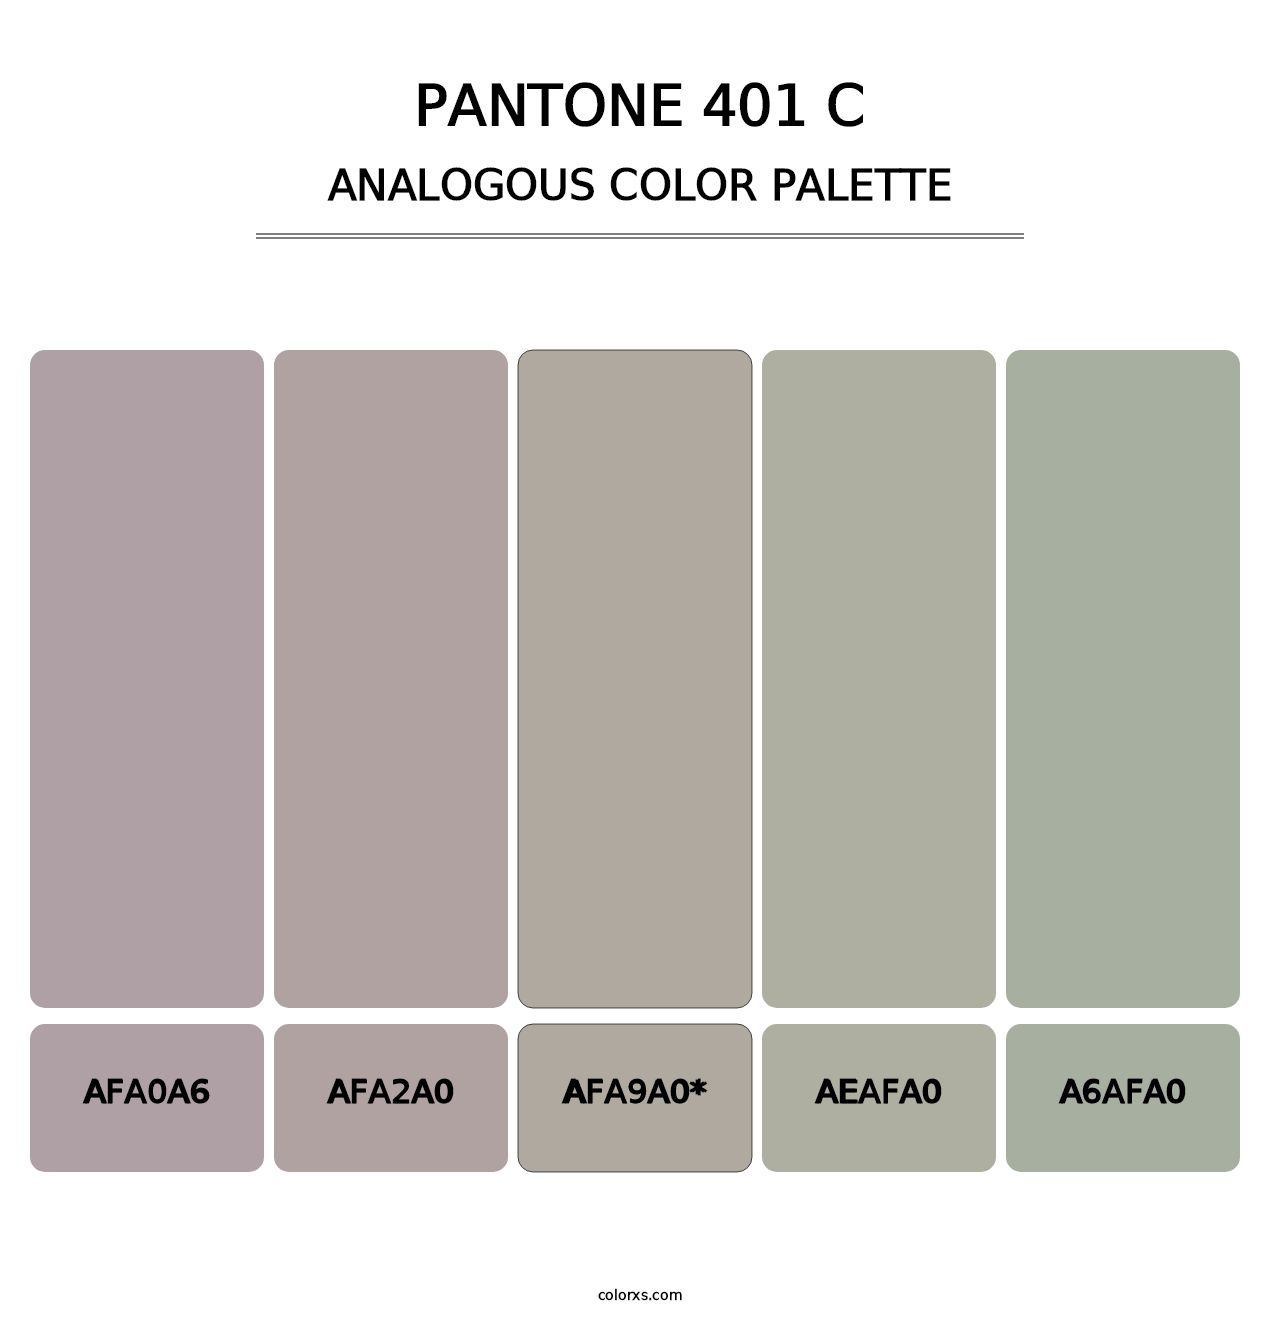 PANTONE 401 C - Analogous Color Palette